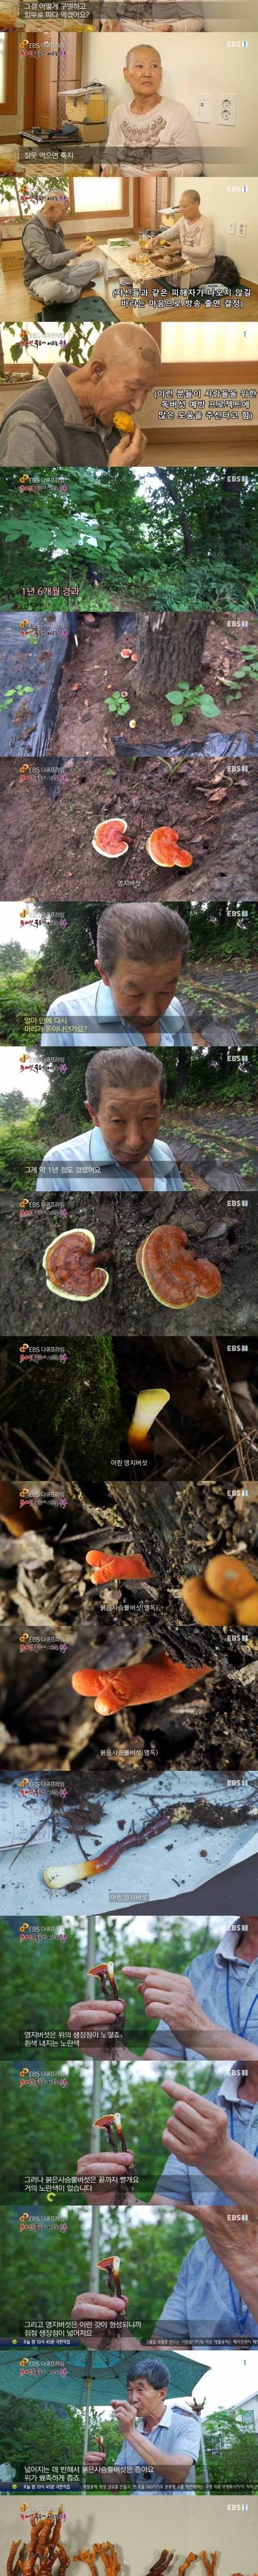 [스압] 한국에 서식하는 가장 위험한 독버섯.jpg